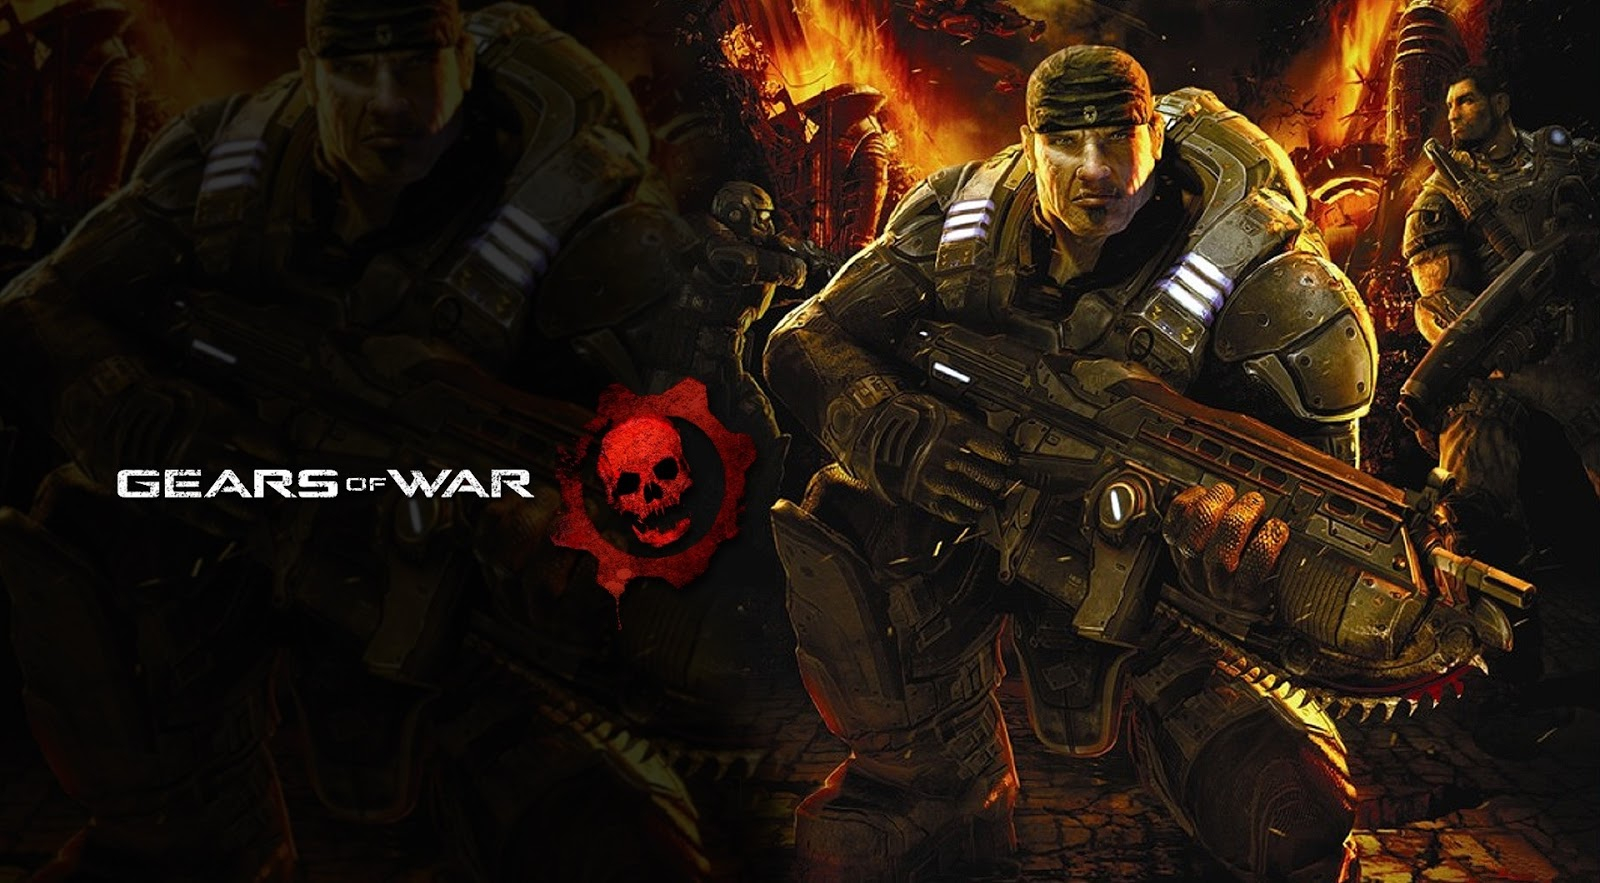 Обложка игры Gears of War